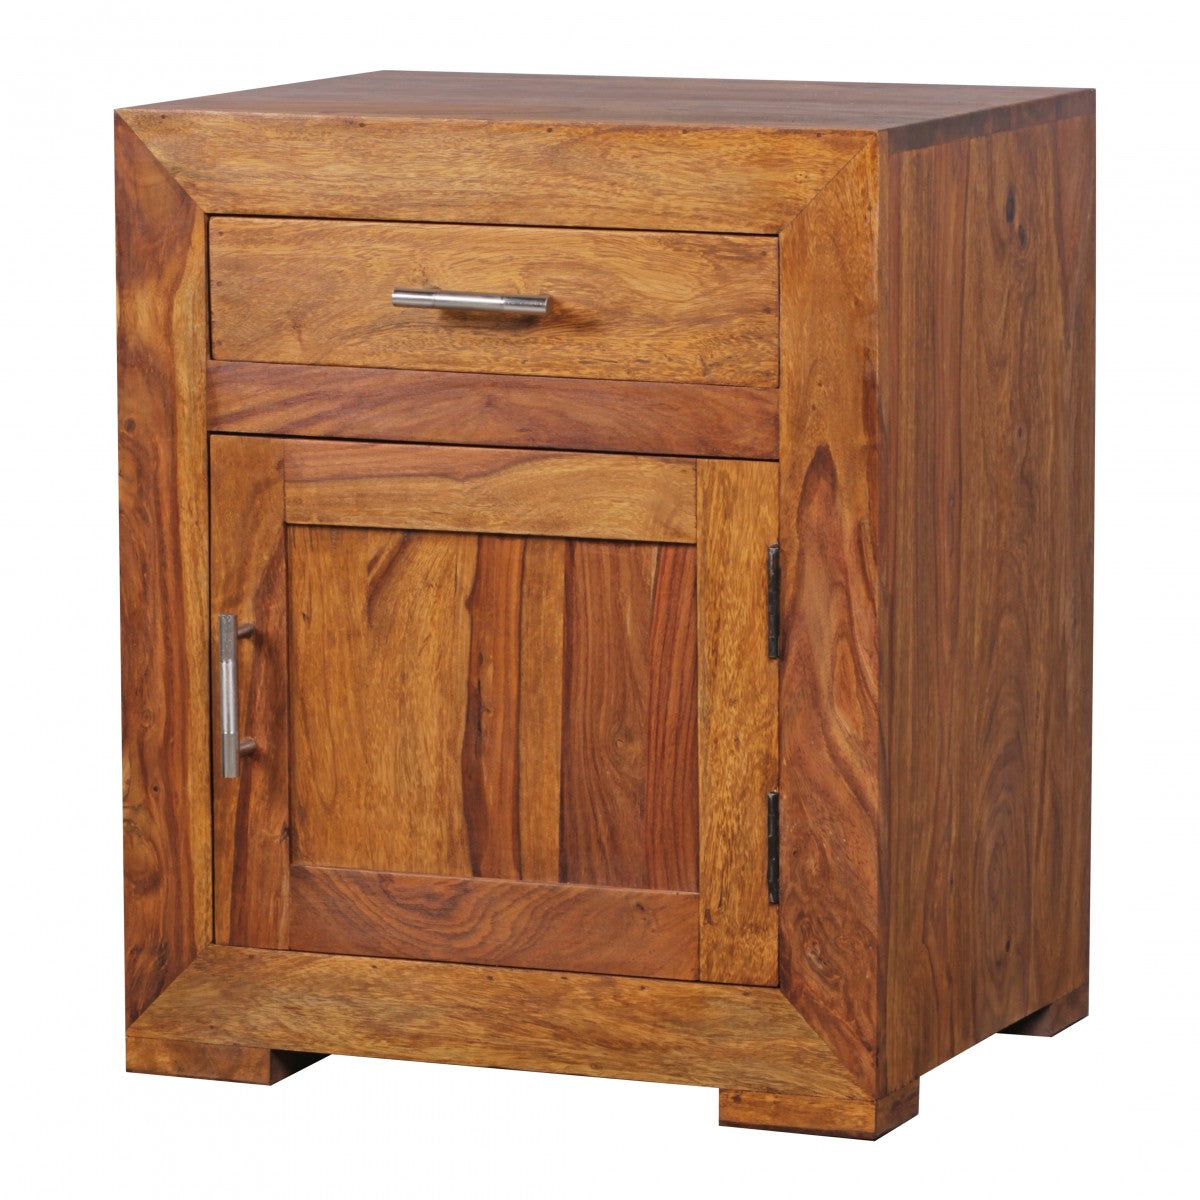 Table de chevet Roseburg de Nancy - Table de chevet en bois massif - Sheesham - Tiroir - Porte - Tables de chevet